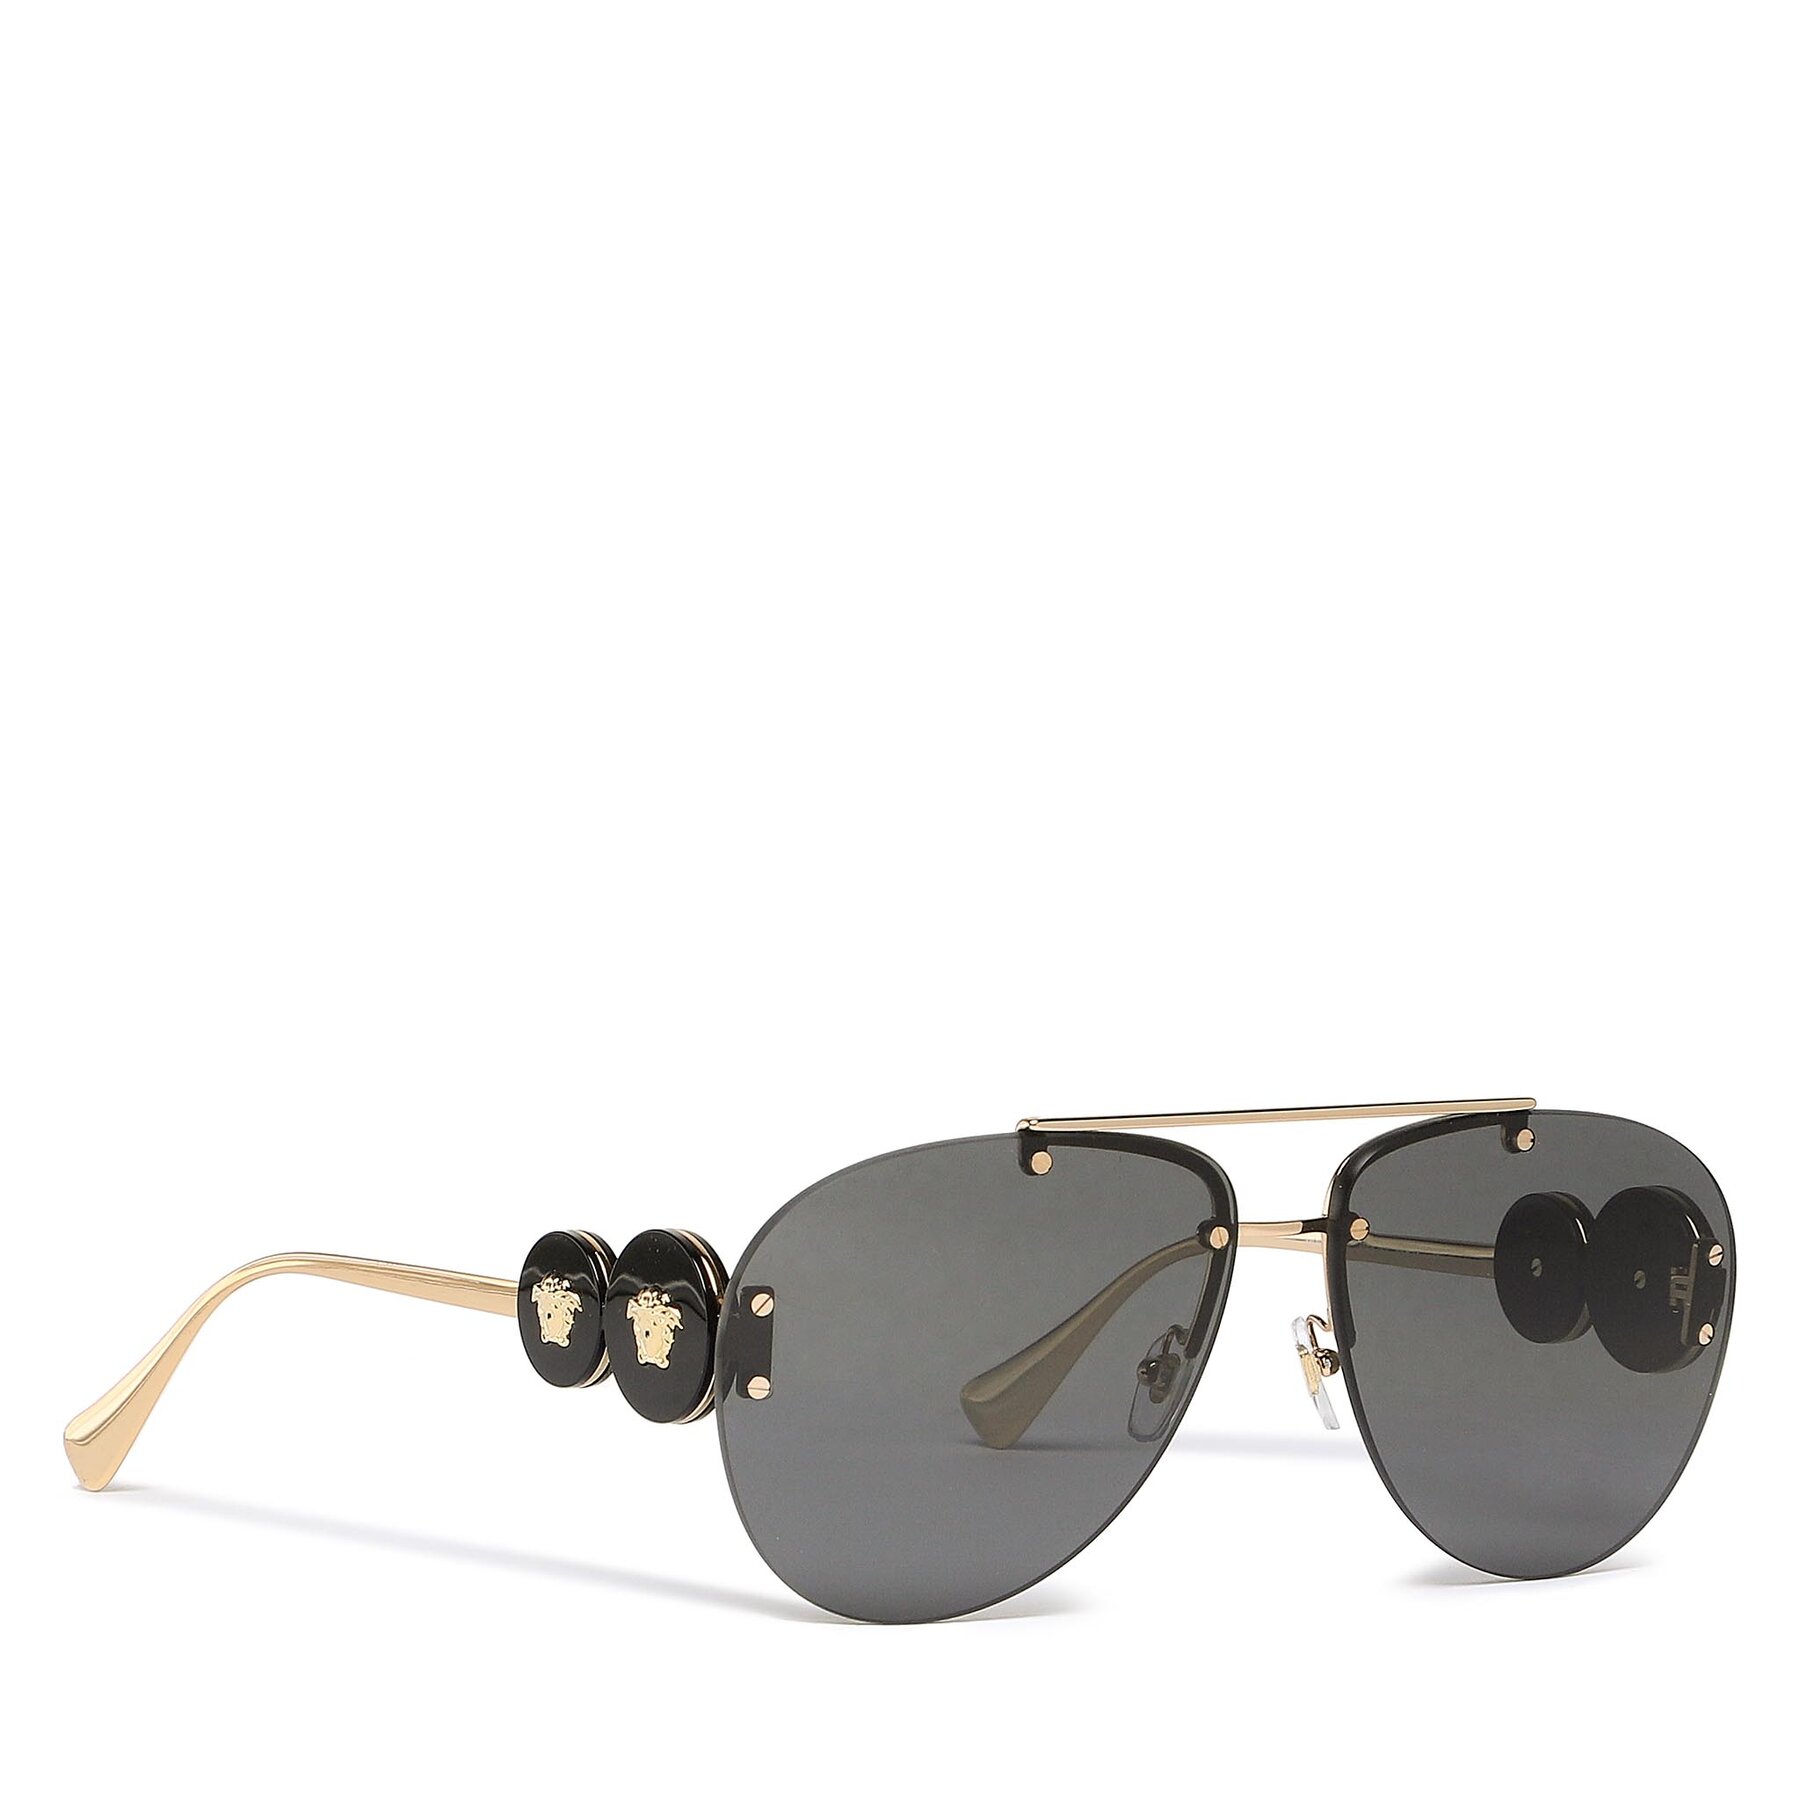 Sunčane naočale Versace 0VE2250 100287 Gold/Dark Grey